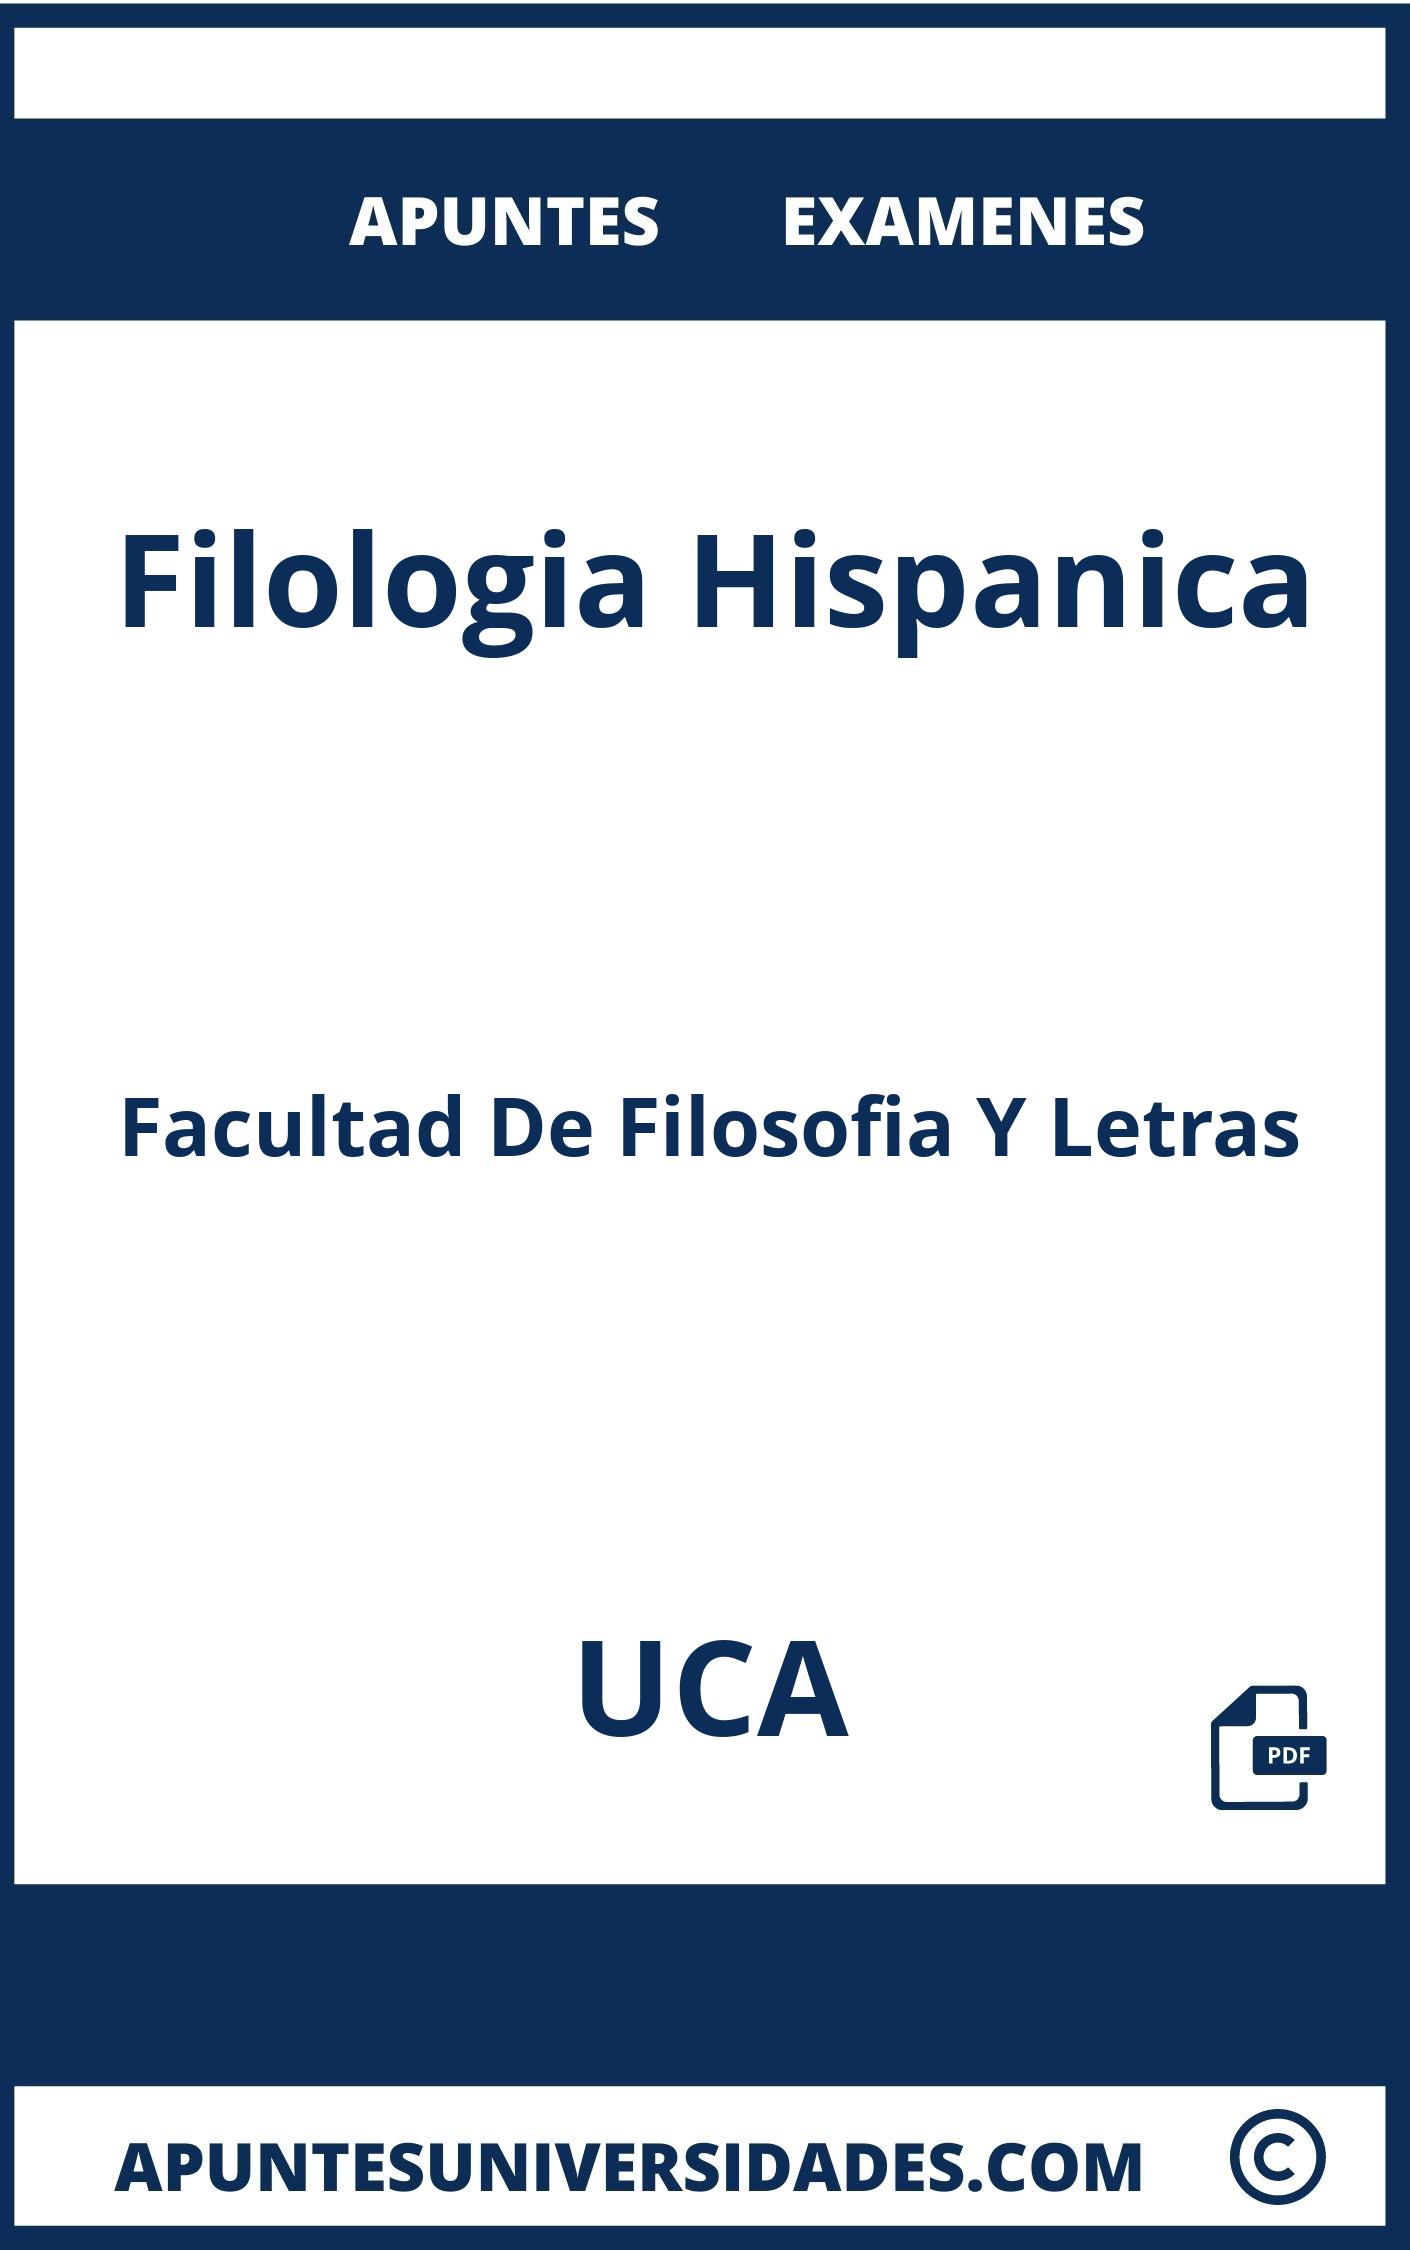 Apuntes y Examenes de Filologia Hispanica UCA